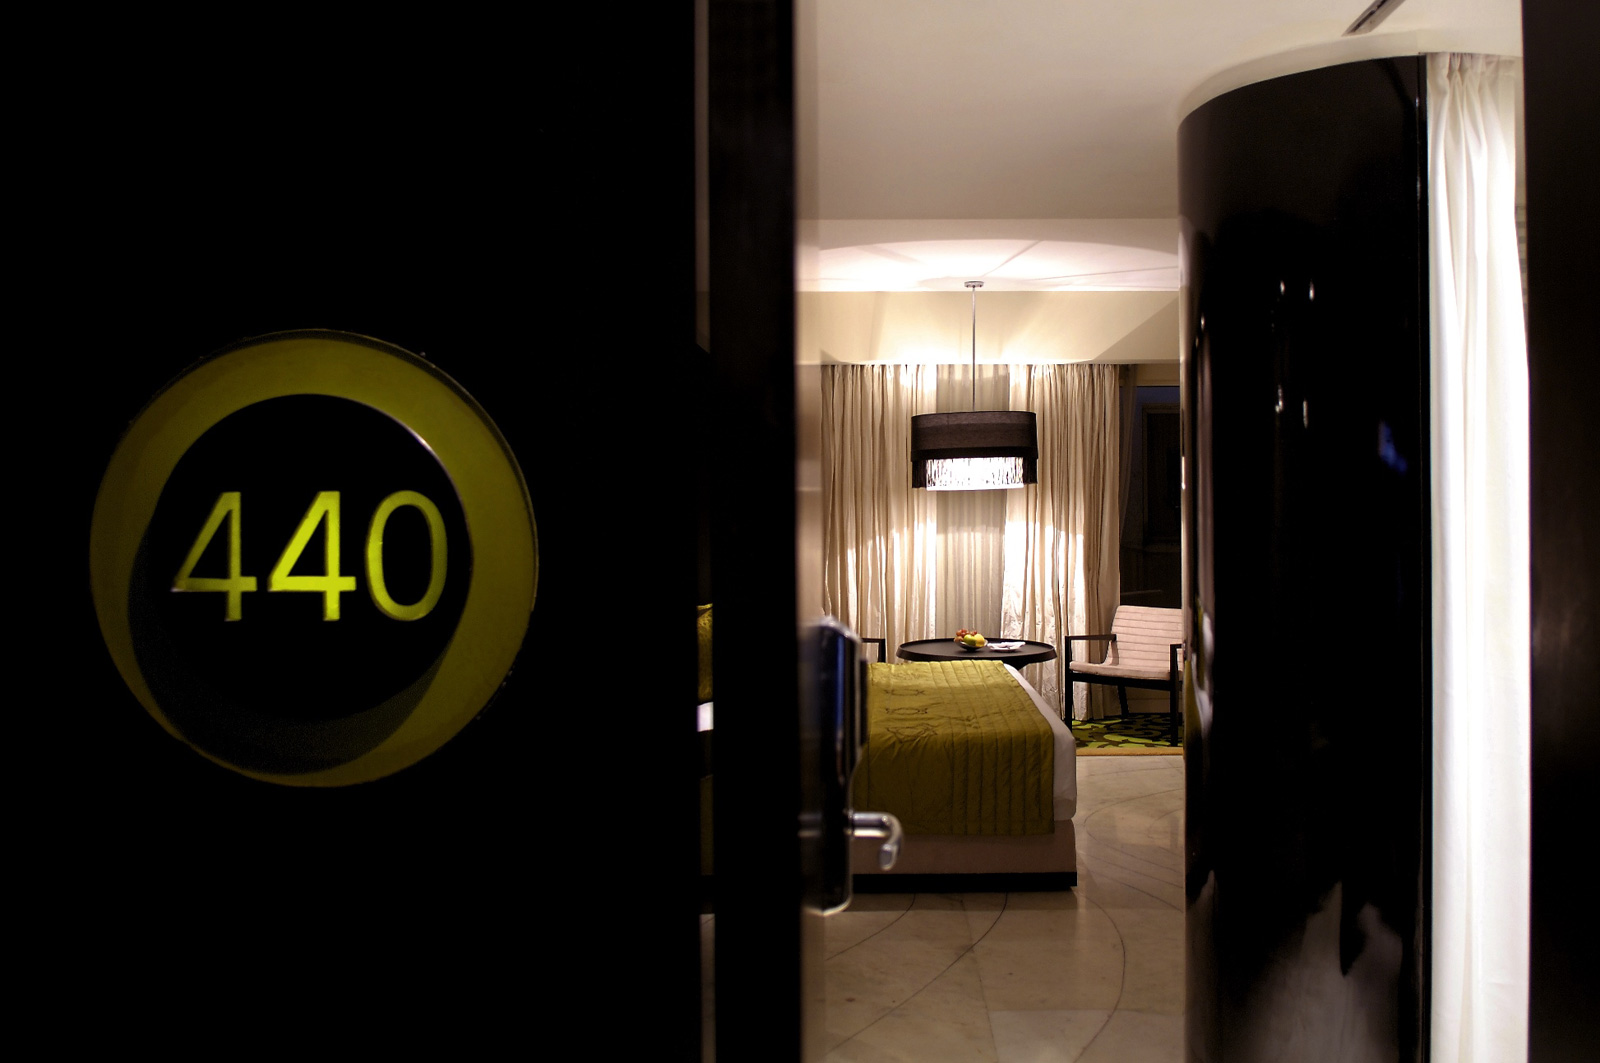 Luxury Room No 440 at The Park Hotels Kolkata